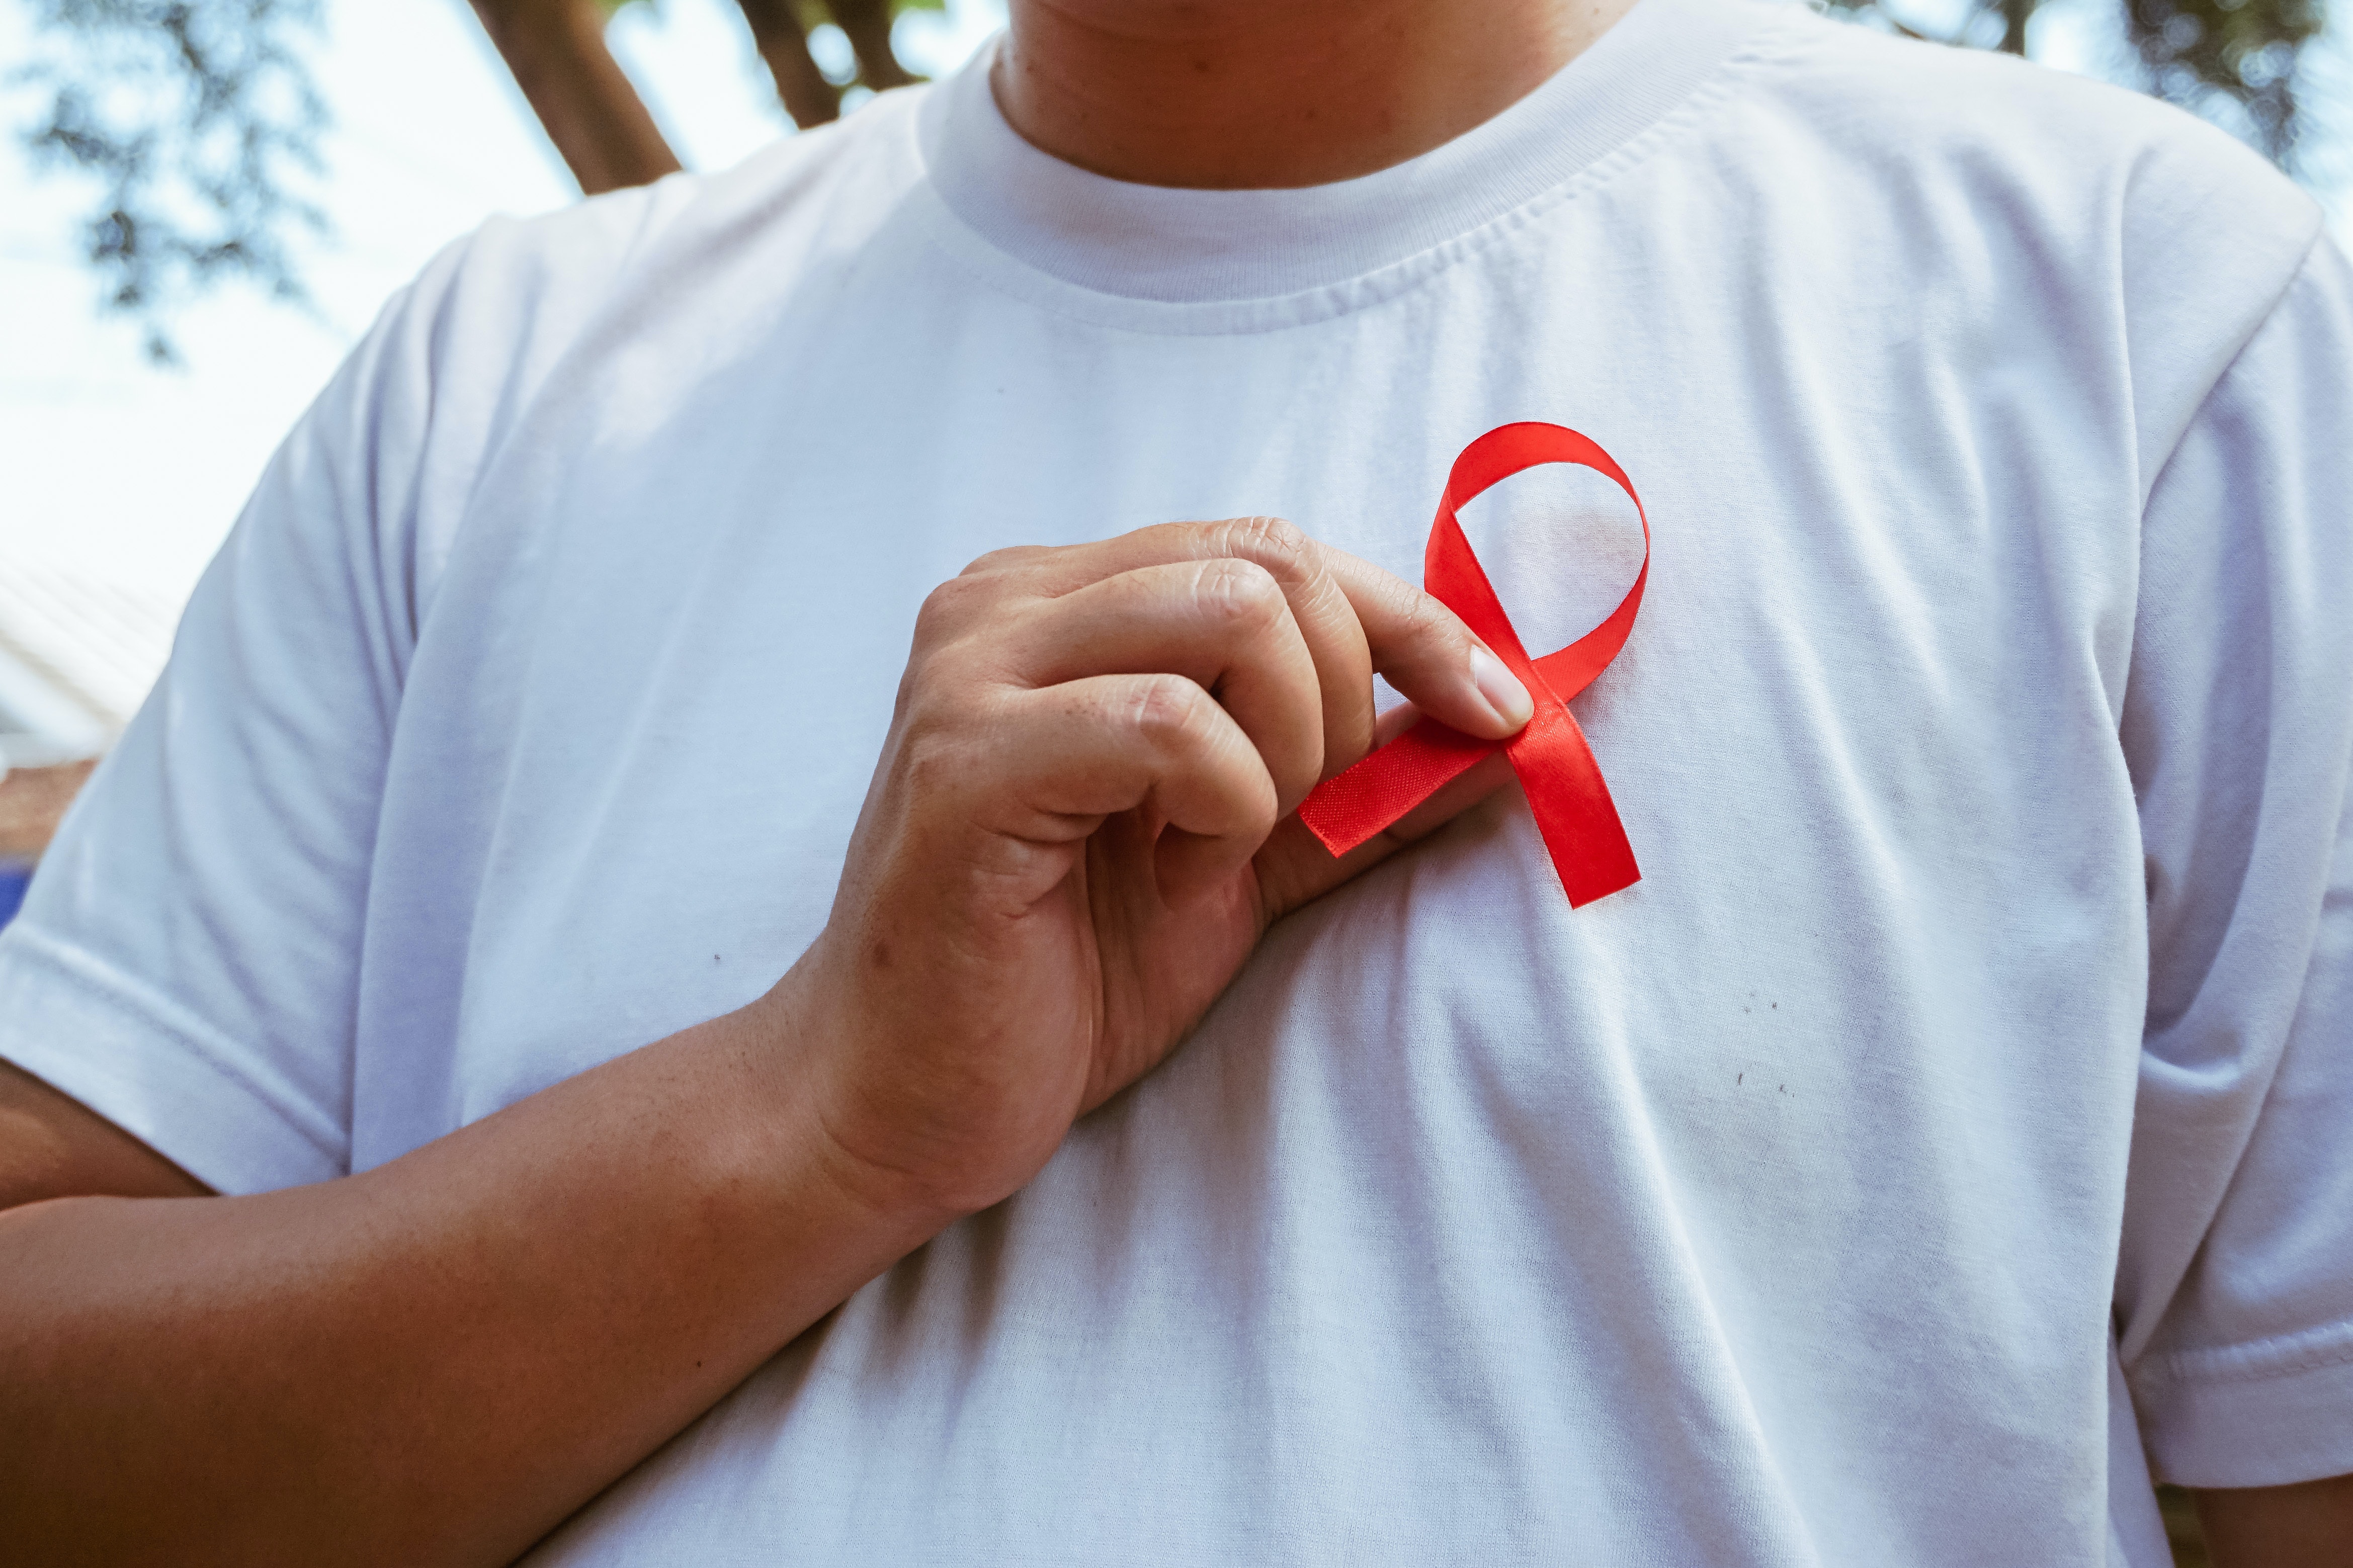 Een revolutionaire nieuwe hiv-behandeling is zojuist goedgekeurd in Groot-Brittannië